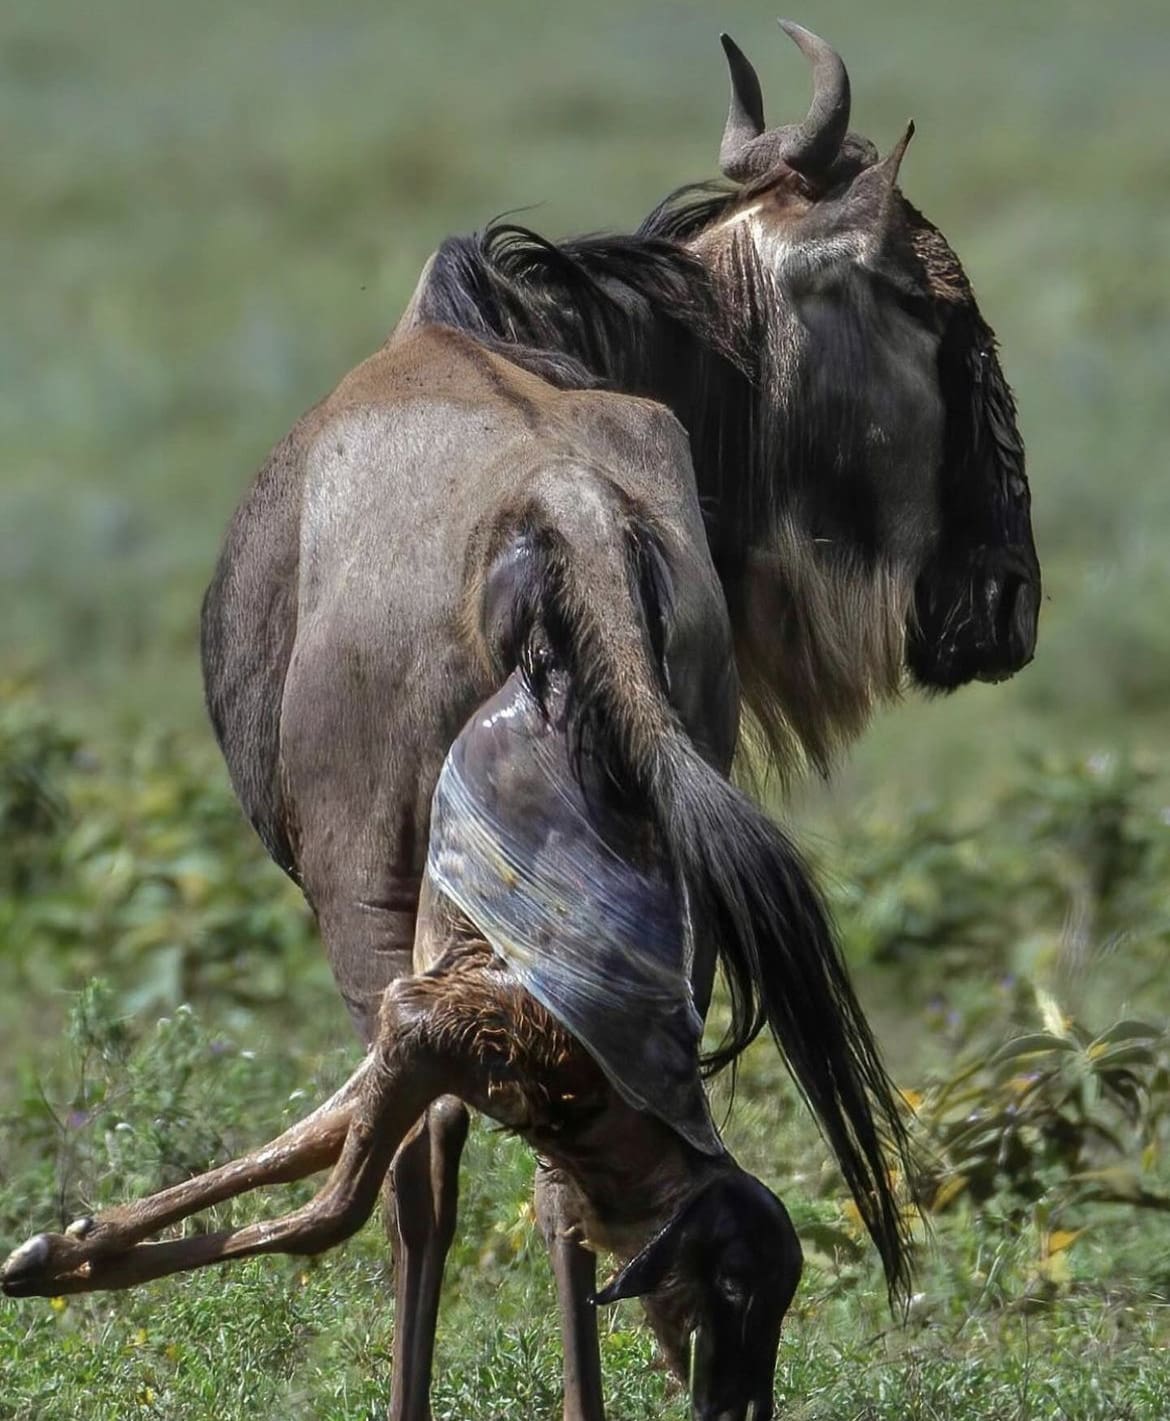 Wildebeest giving birth in Africa